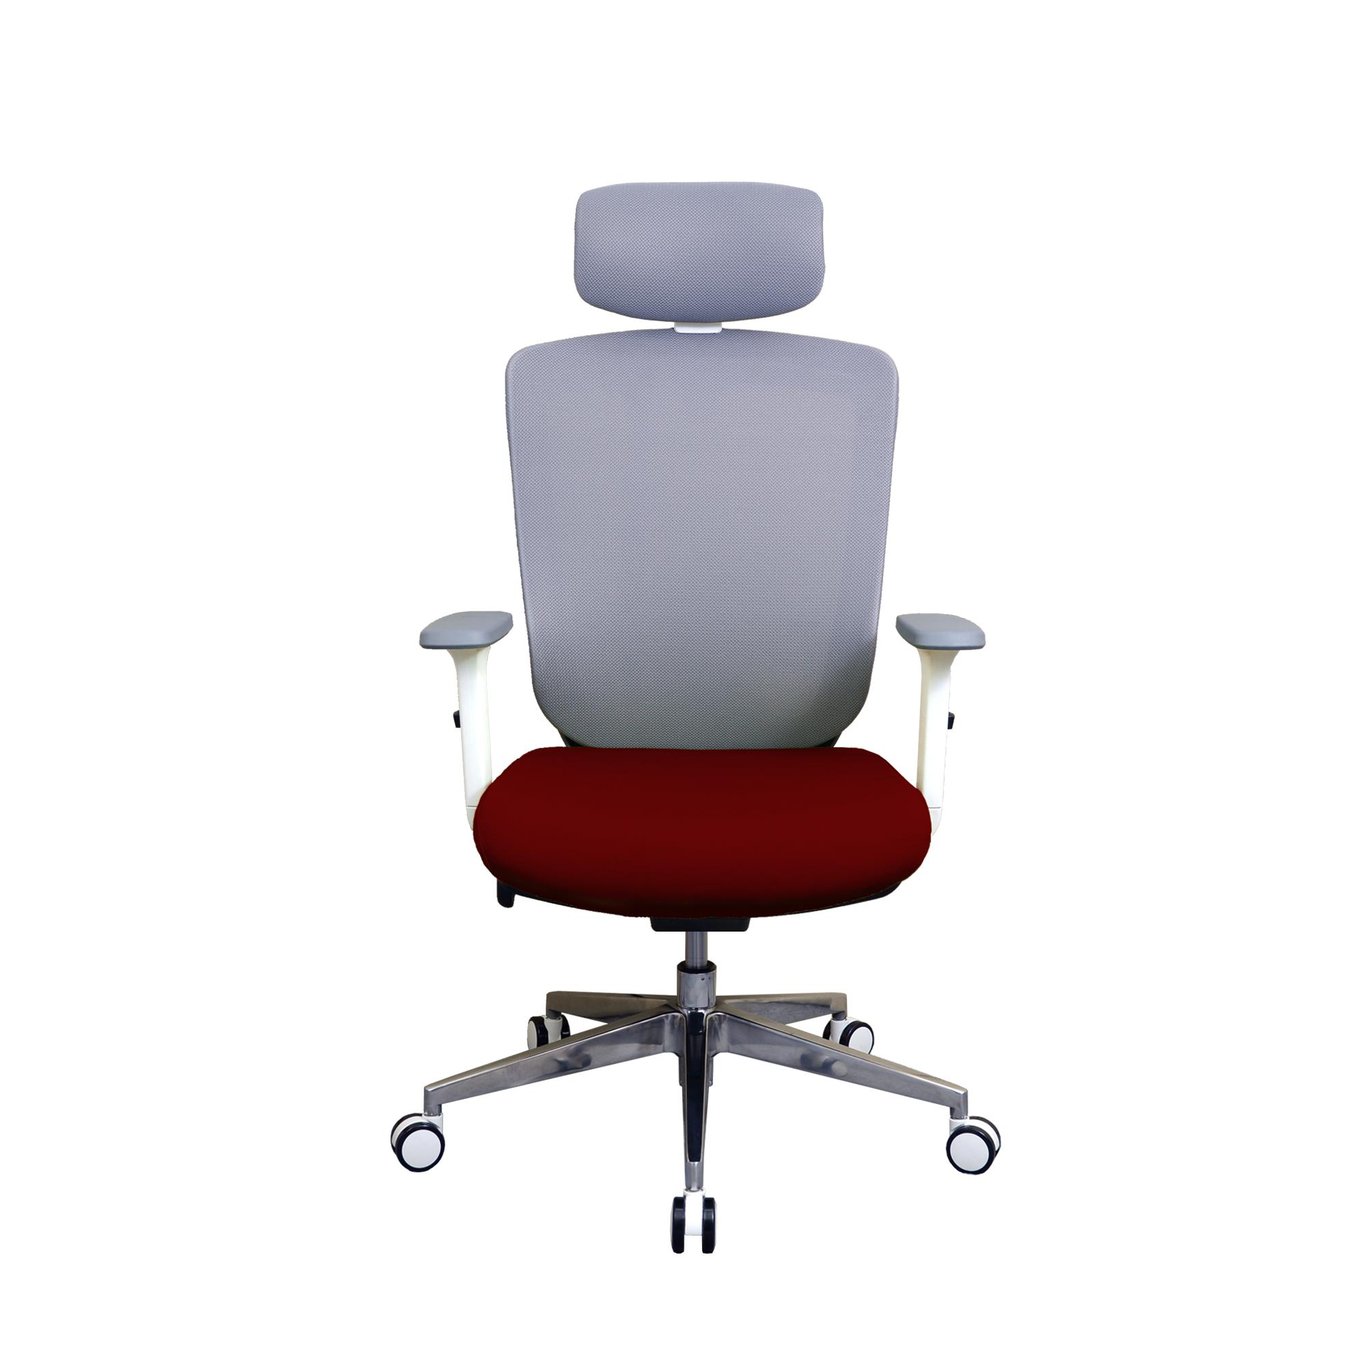 Zenox Zagen Office Chair 辦公椅 - 紅色